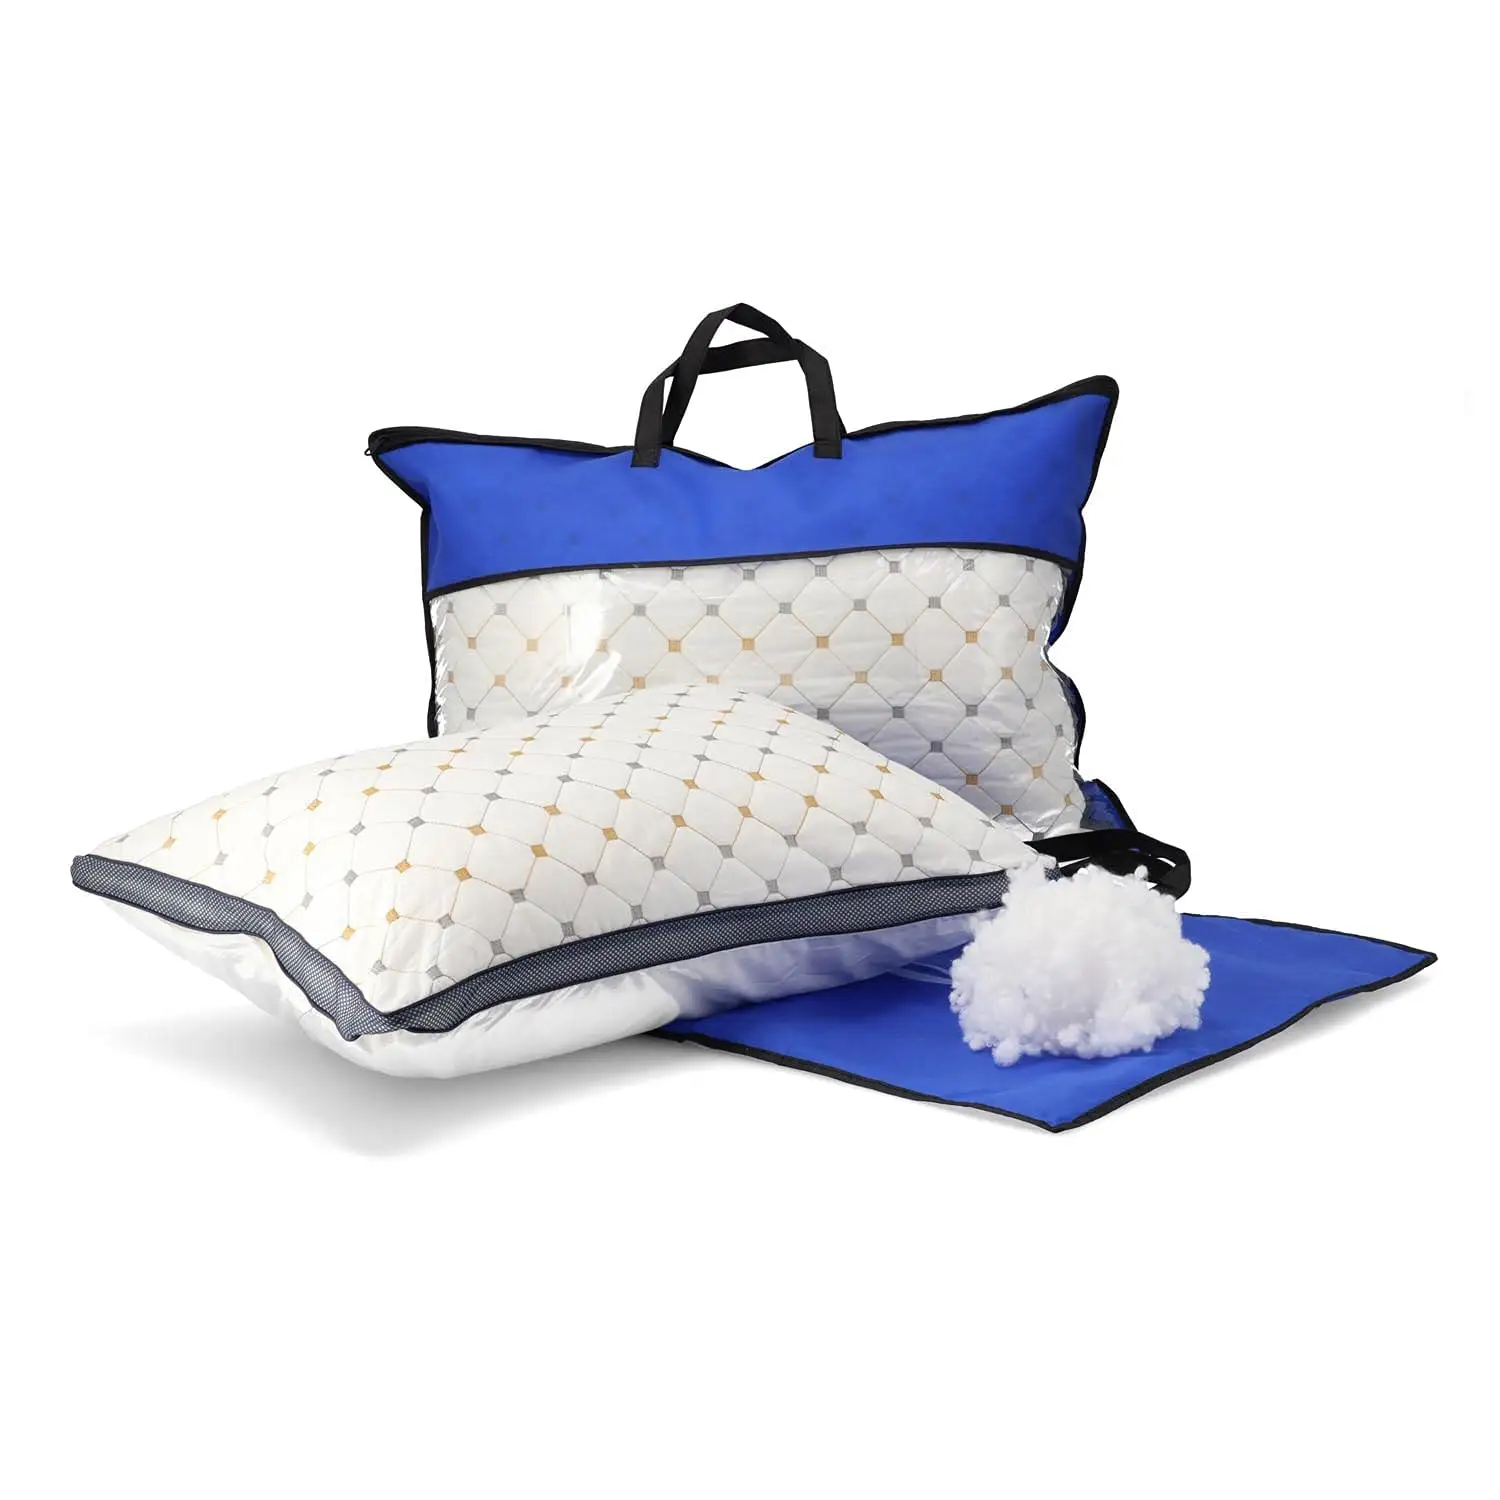 50x70 cm Füllung fest unterstützen des Schlaf kissen Bett kissen für Allergiker Seitens chläfer atmungsaktiver Komfort von hoher Qualität